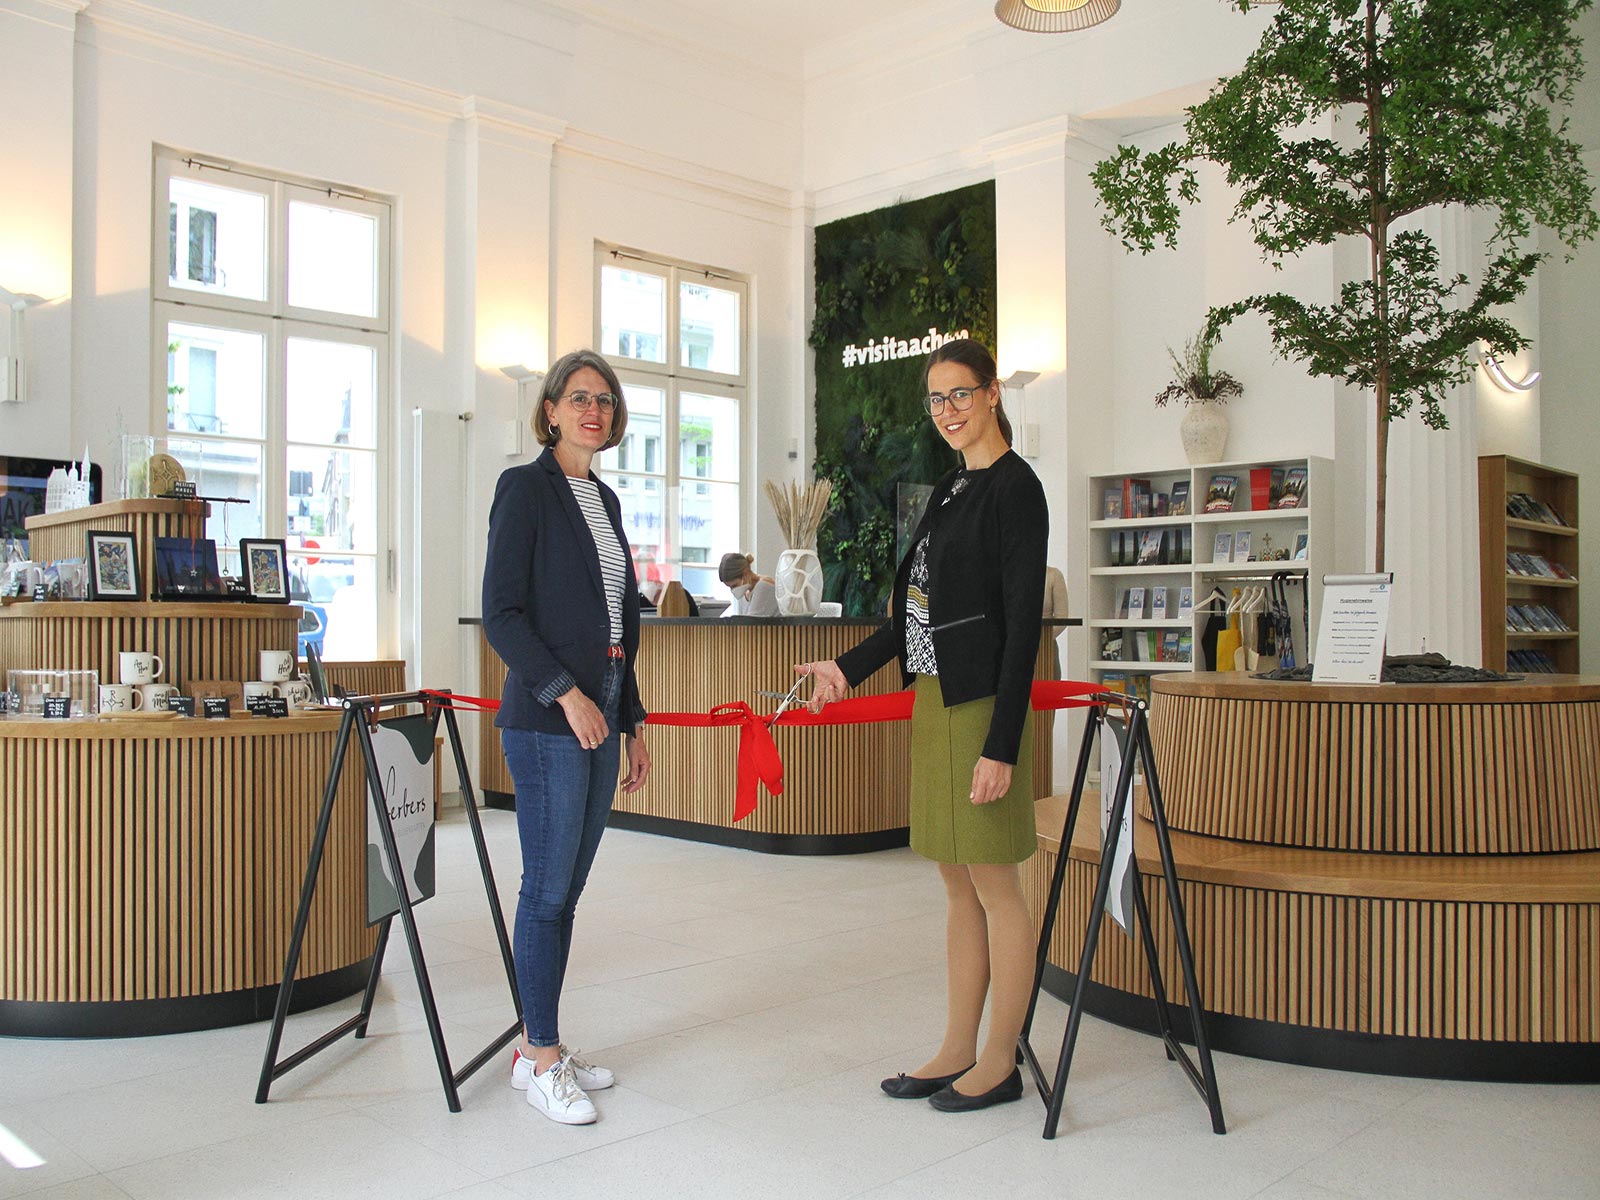 A brand new Tourist Information Center for Aachen